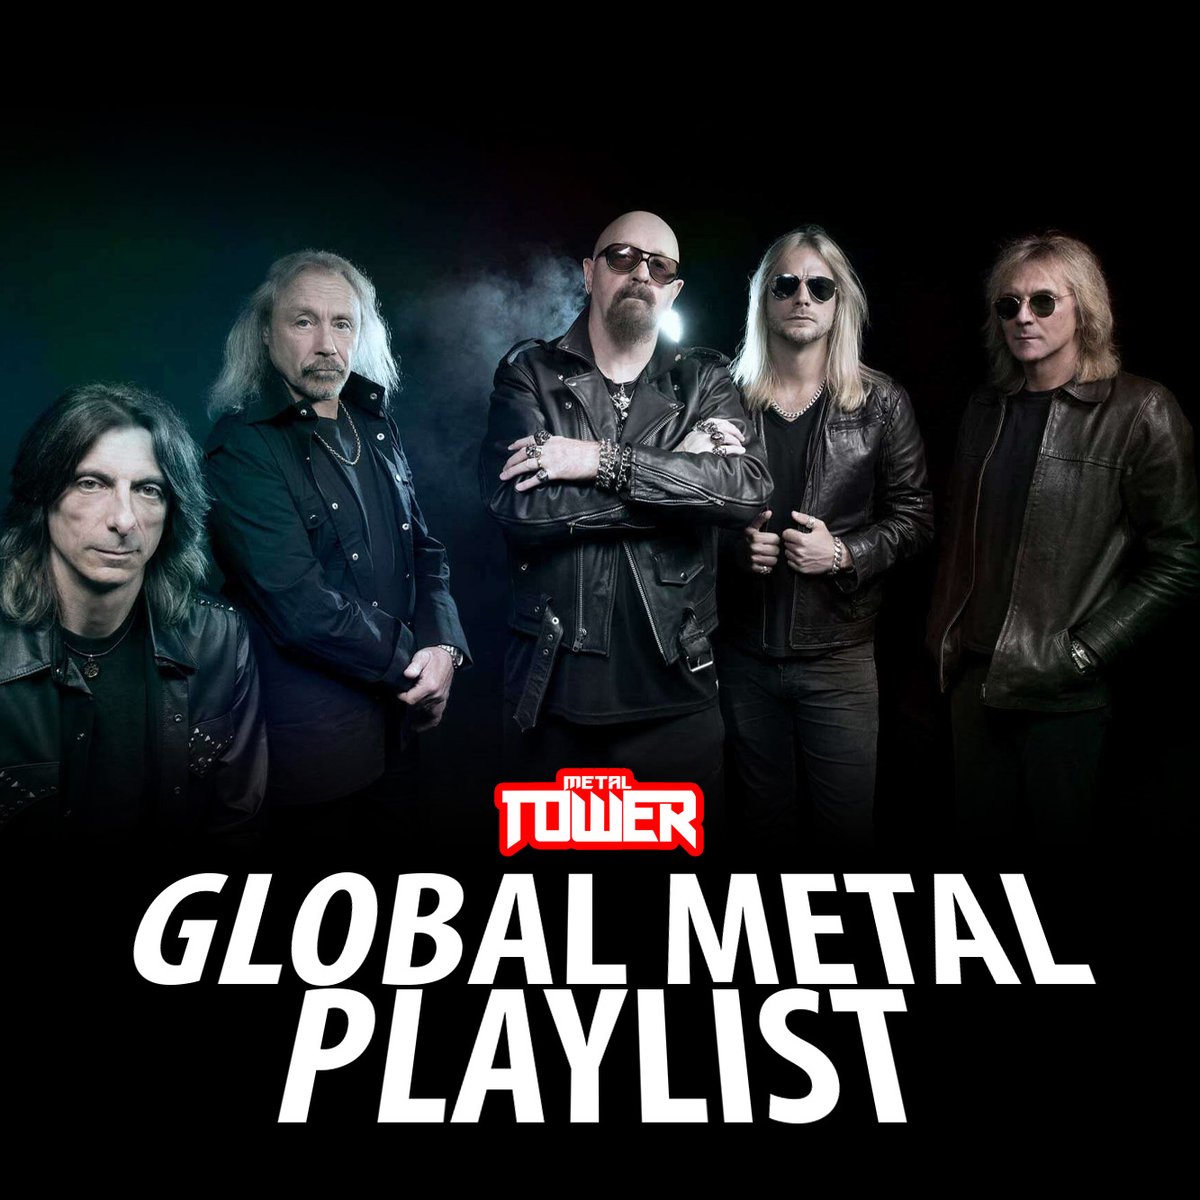 Sigue y comparte nuestra playlist 'Global Metal 2024'

👉spoti.fi/3R2Gbqk

➤ Todos los subgéneros del metal
➤ Más de 1000 nuevas canciones
➤ En portada Judas Priest

#metalplaylist #newreleases #judaspriest #InvincibleShield